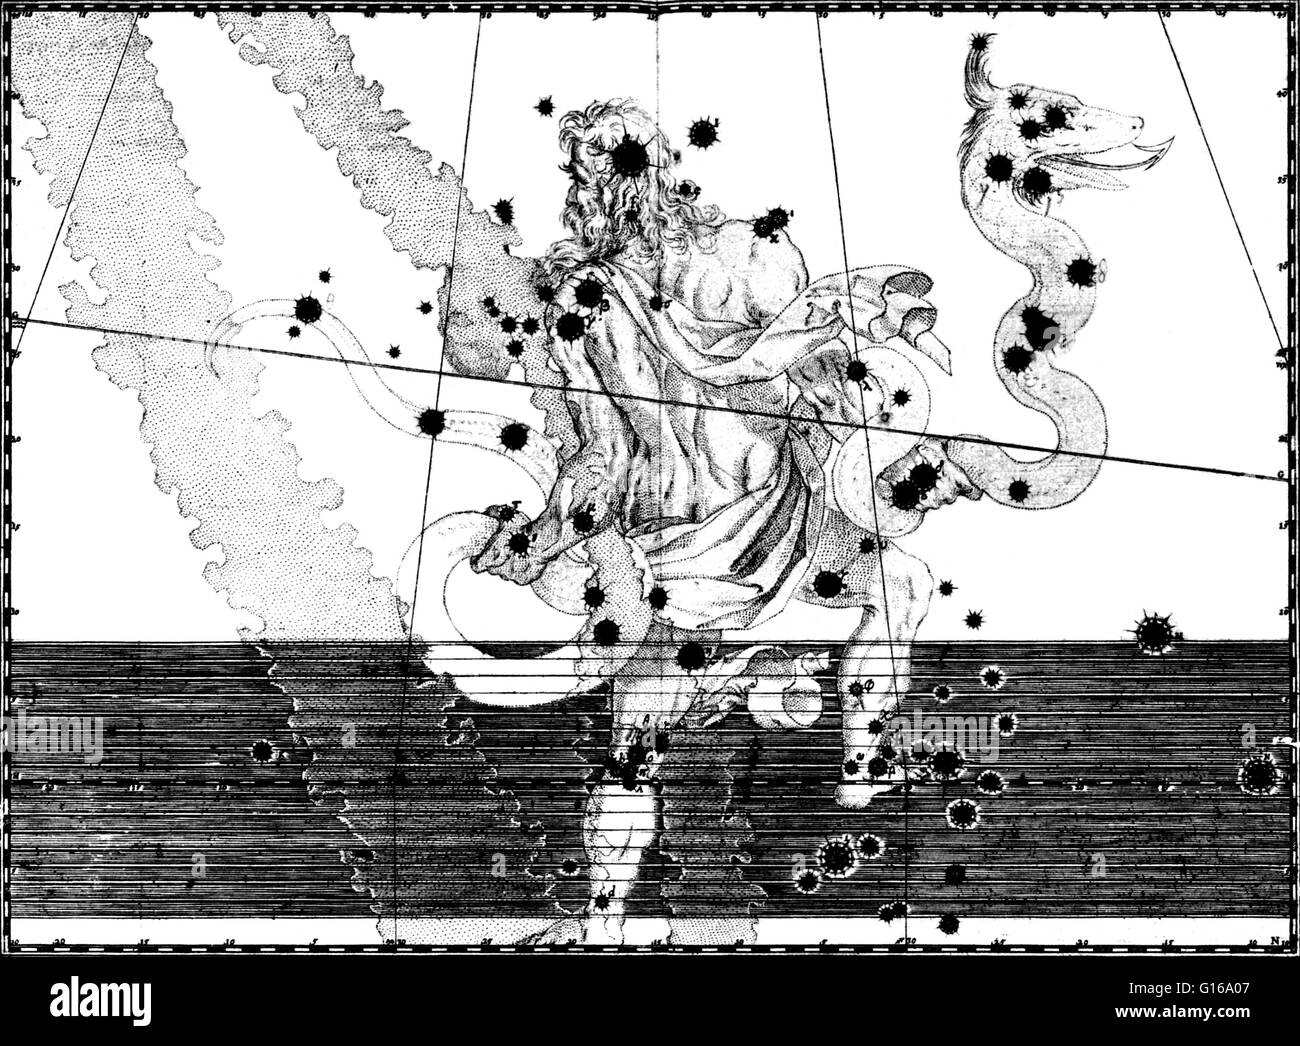 Ophiuchus Konstellation von Johann Bayers Sternatlas Uranometria Omnium Asterismorum, 1603. Ophiuchus ist eine große Konstellation rund um den Himmelsäquator. Ophiuchus war eines der 48 Sternbilder aufgeführt nach dem 2. Jahrhundert Astronom Ptolemäus, Stockfoto